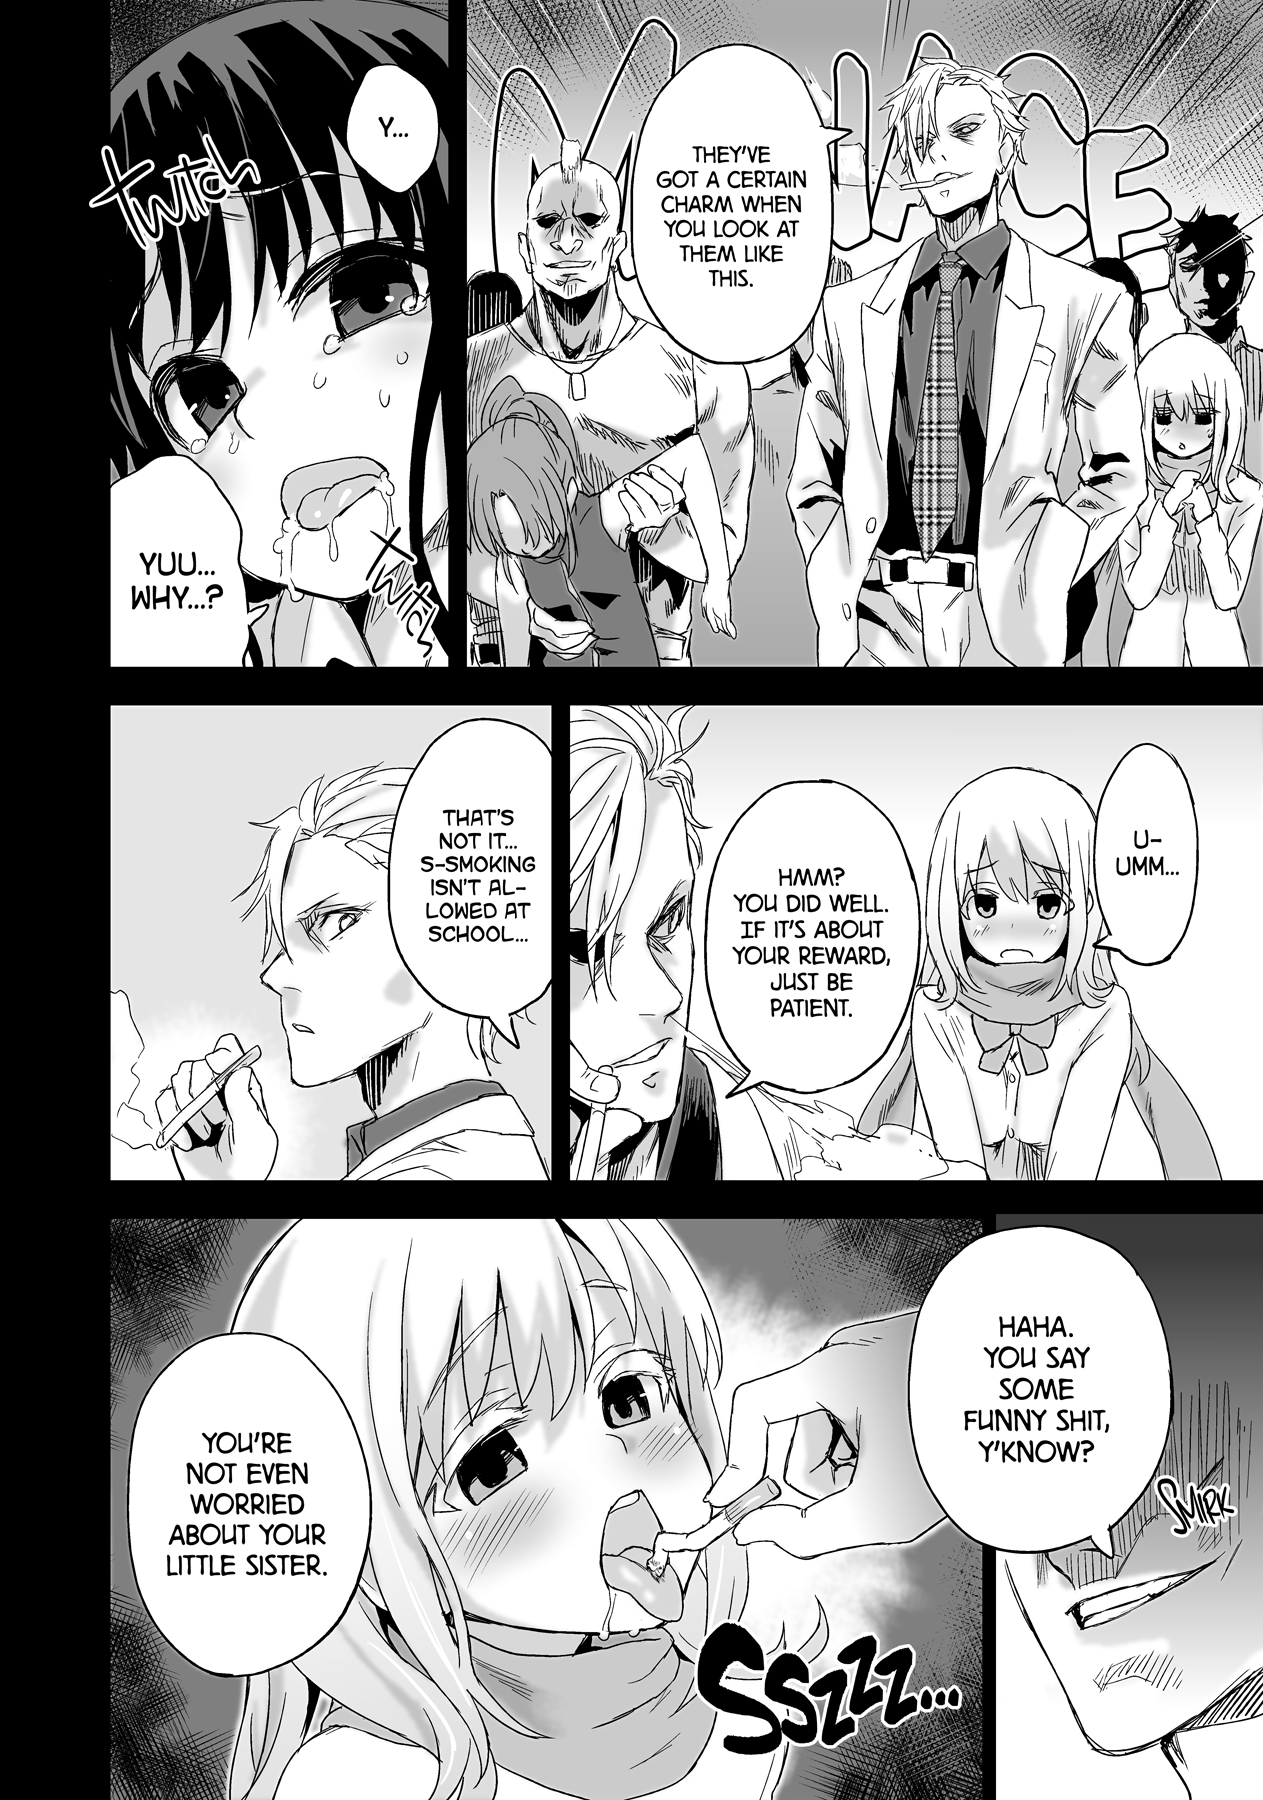 Victim Girls 13 - DRAGON SLAYER hentai manga picture 14